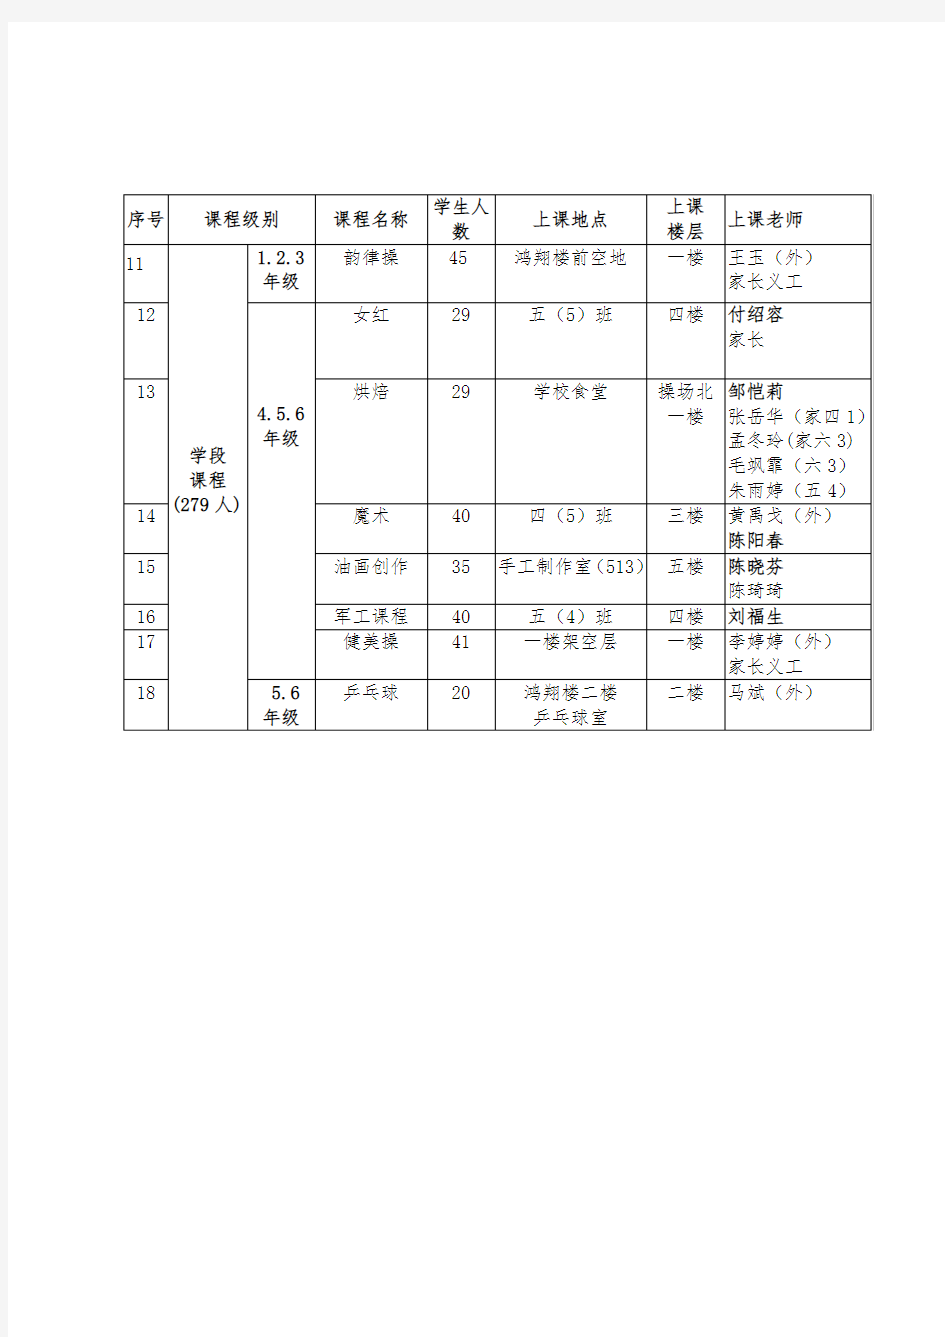 深圳红岭小学多元校本课程安排总表